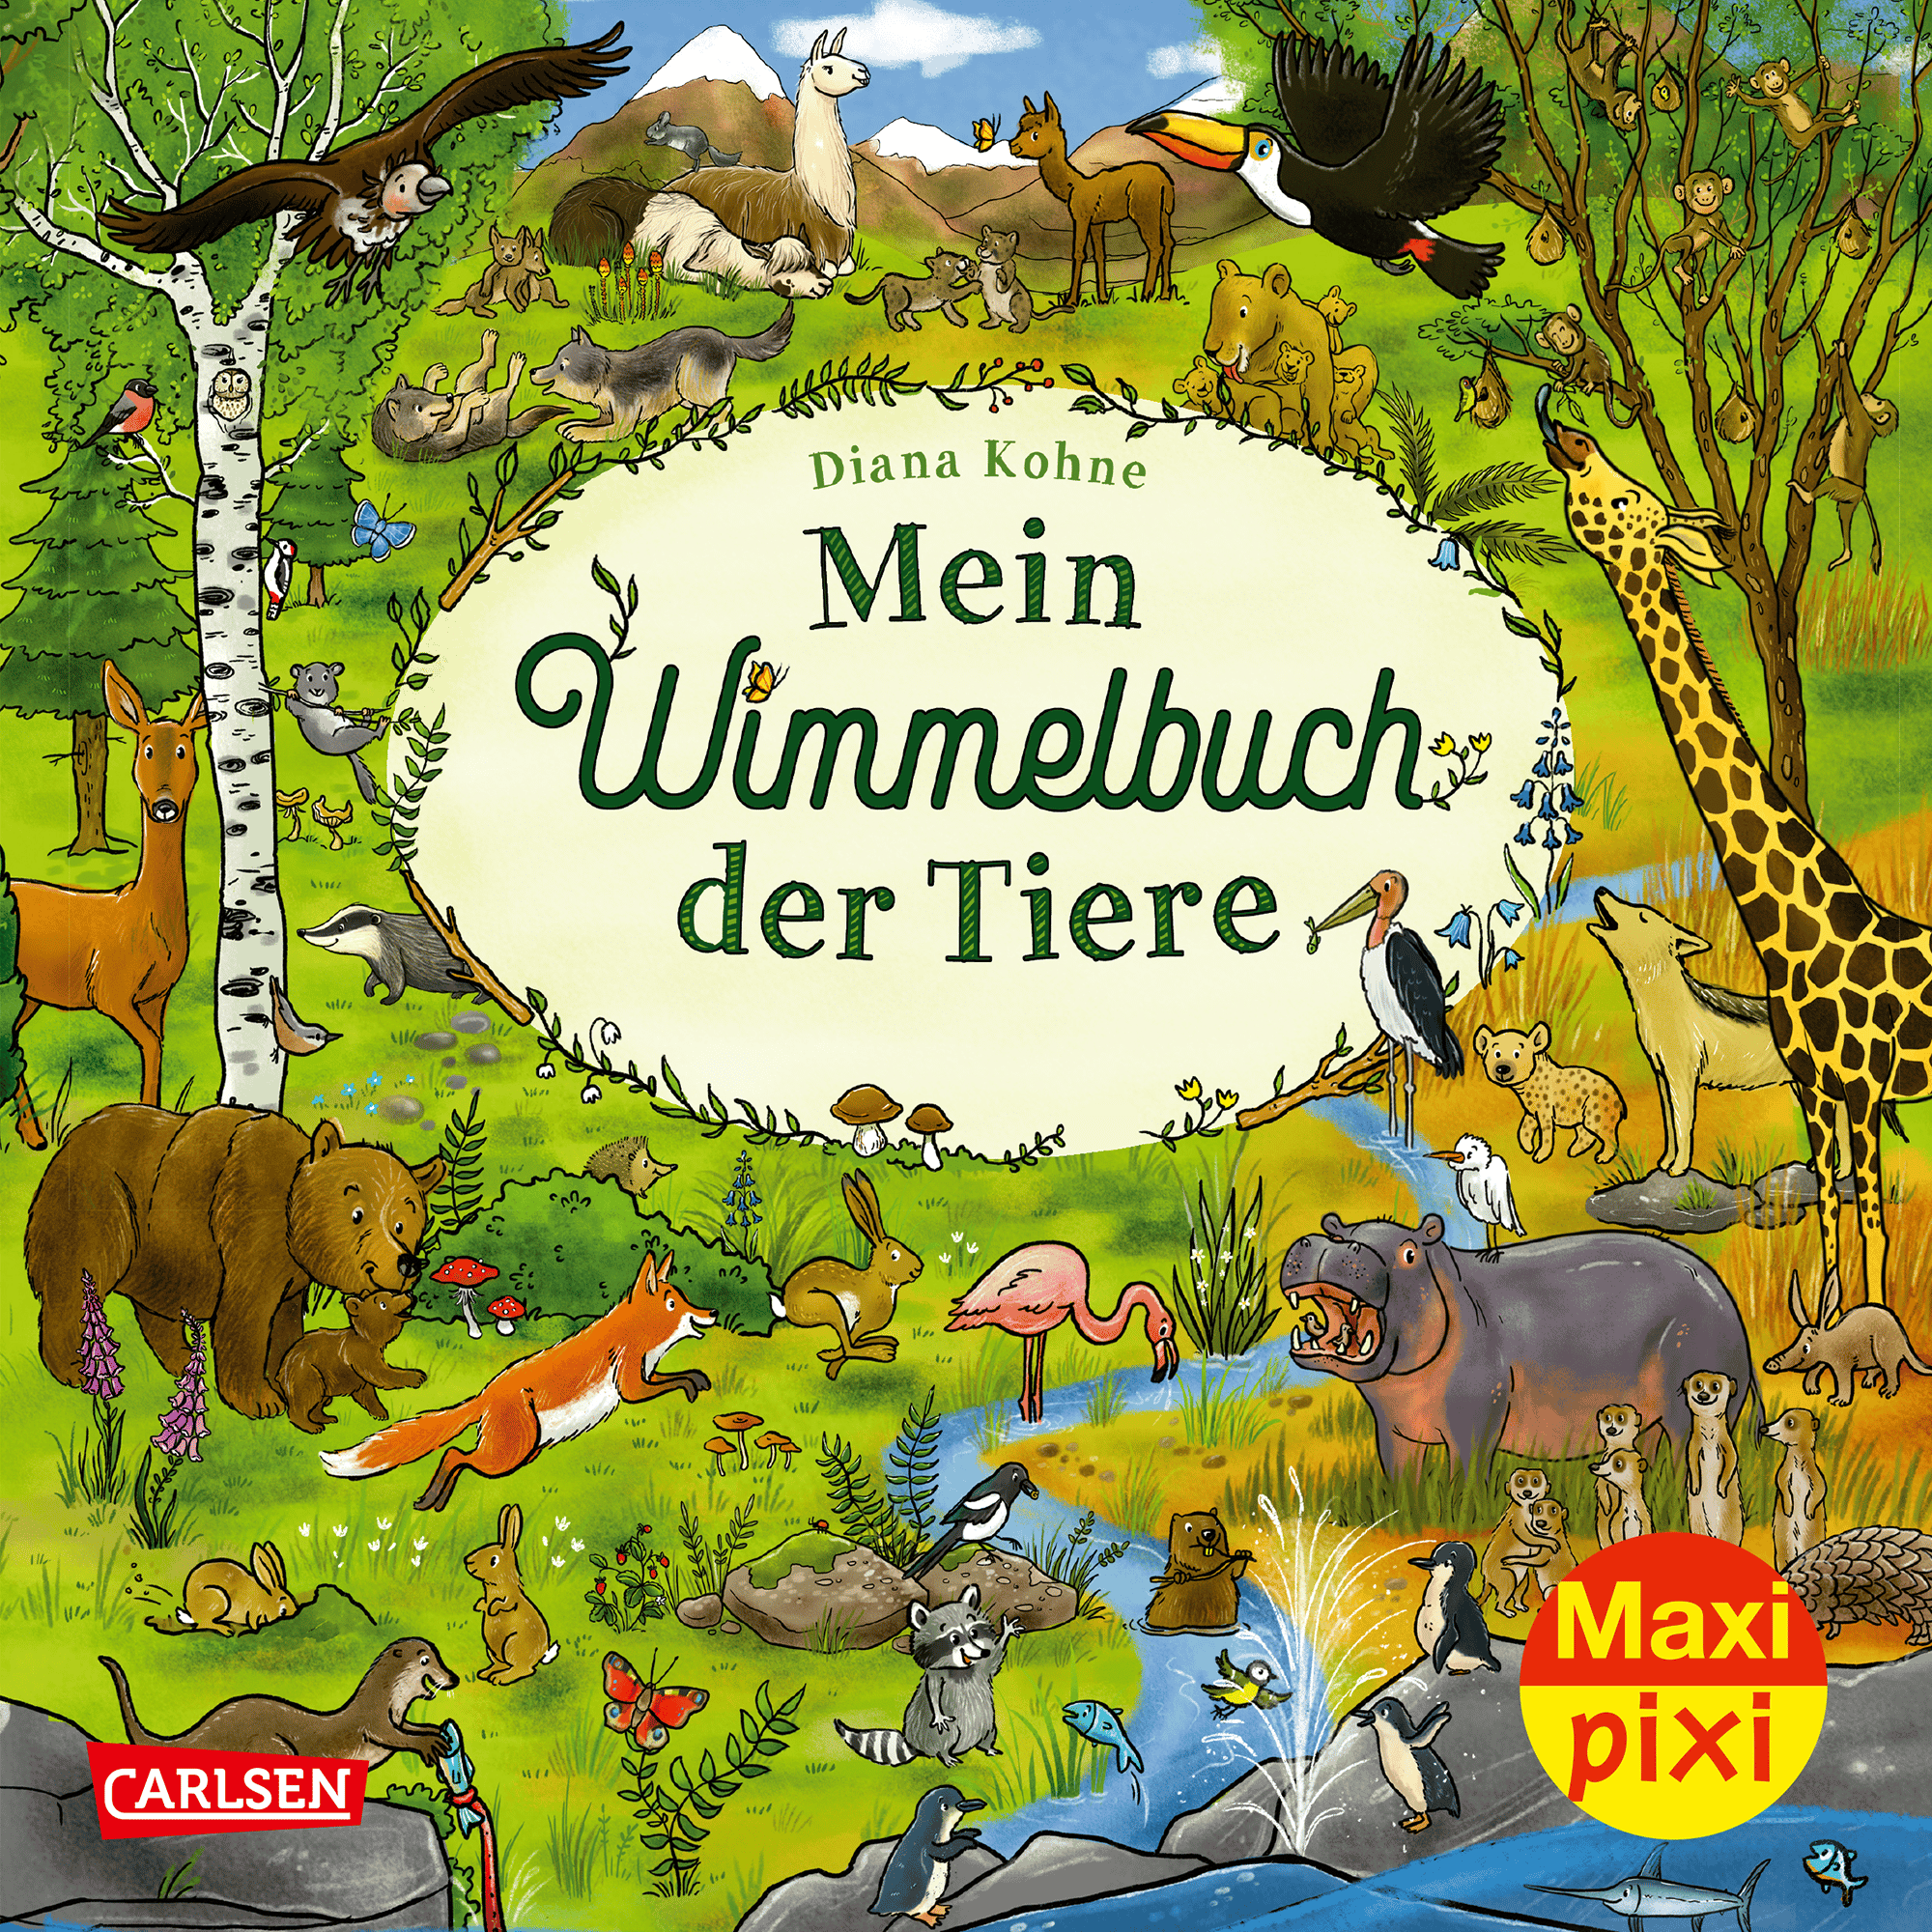 Maxi Pixi 417: Mein Wimmelbuch der Tiere CARLSEN 2000585070601 1